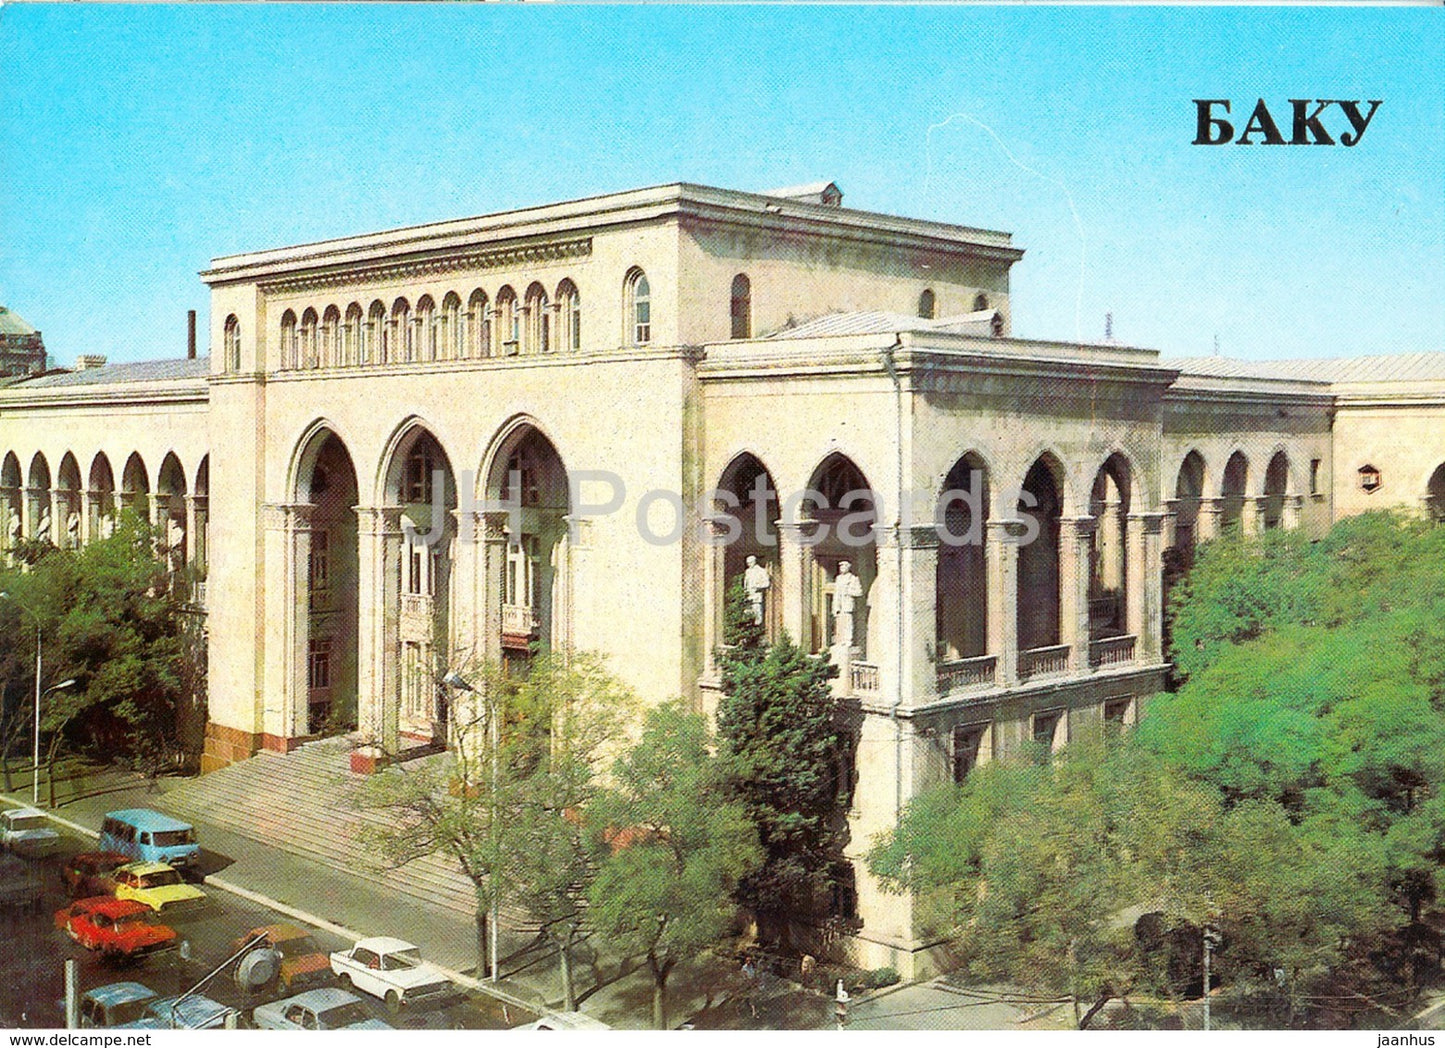 Baku - Akhundov Library - 1985 - Azerbaijan USSR - unused